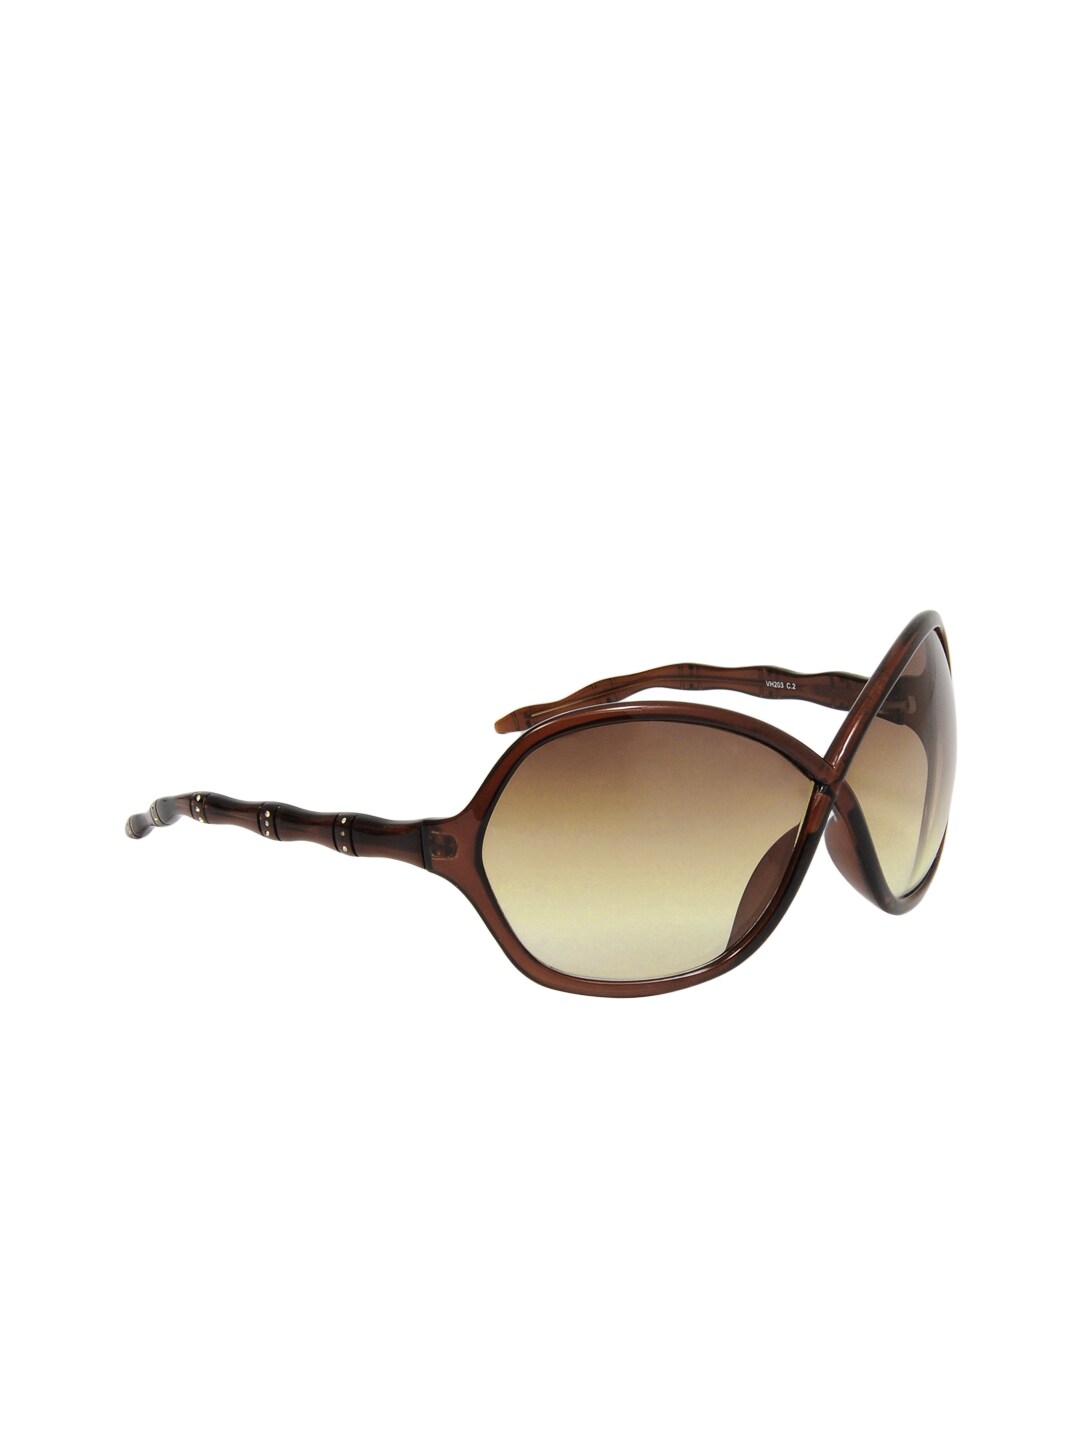 Van Heusen Women Casual Sunglasses